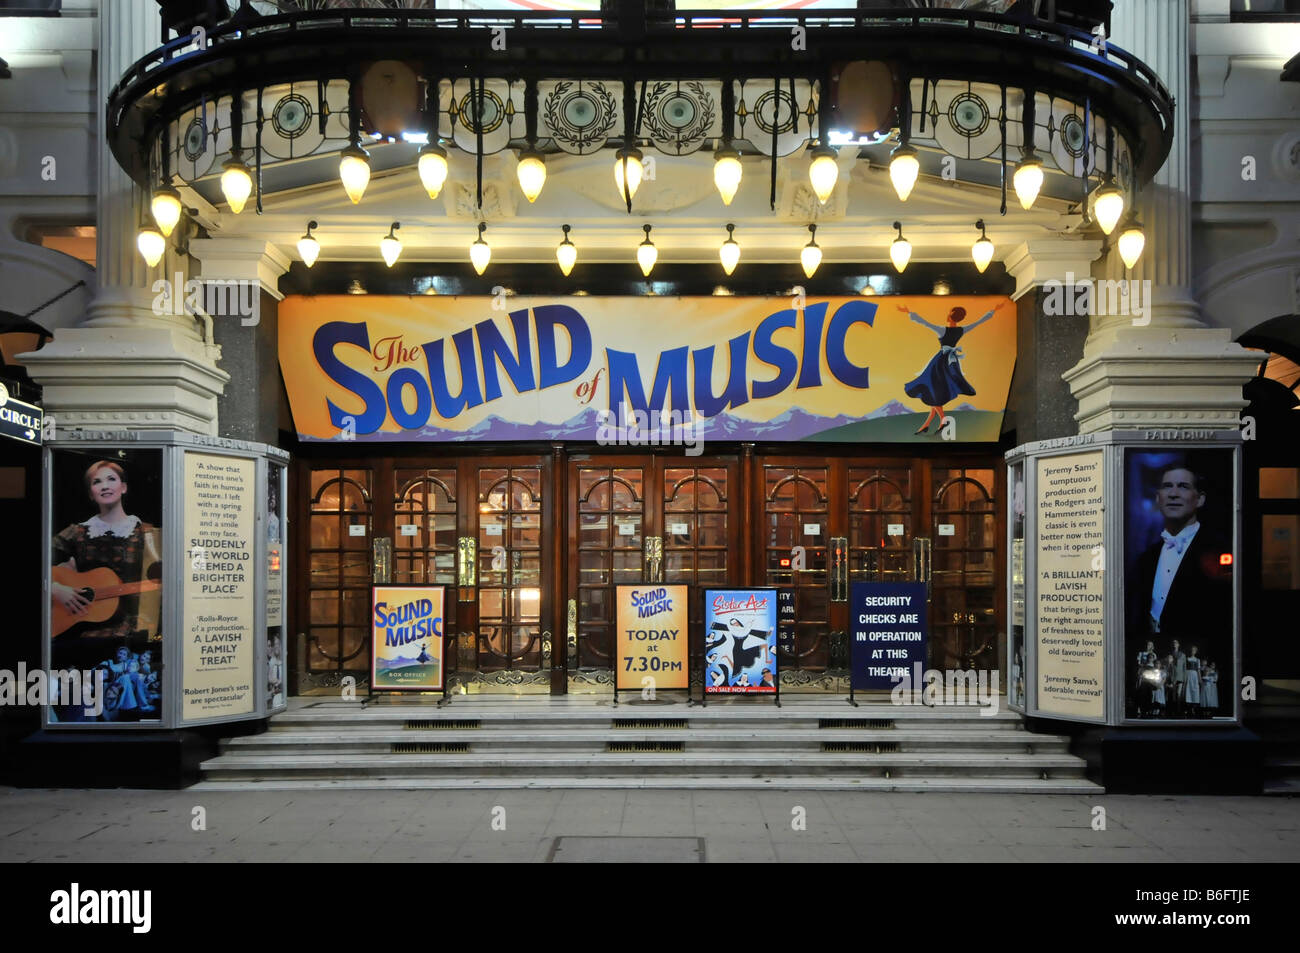 Spettacolo di musica con il cartello di produzione serata presso lo storico Palladium Theatre, porte d'ingresso principali in Argyll Street, Soho West End, Londra, Inghilterra, Regno Unito Foto Stock